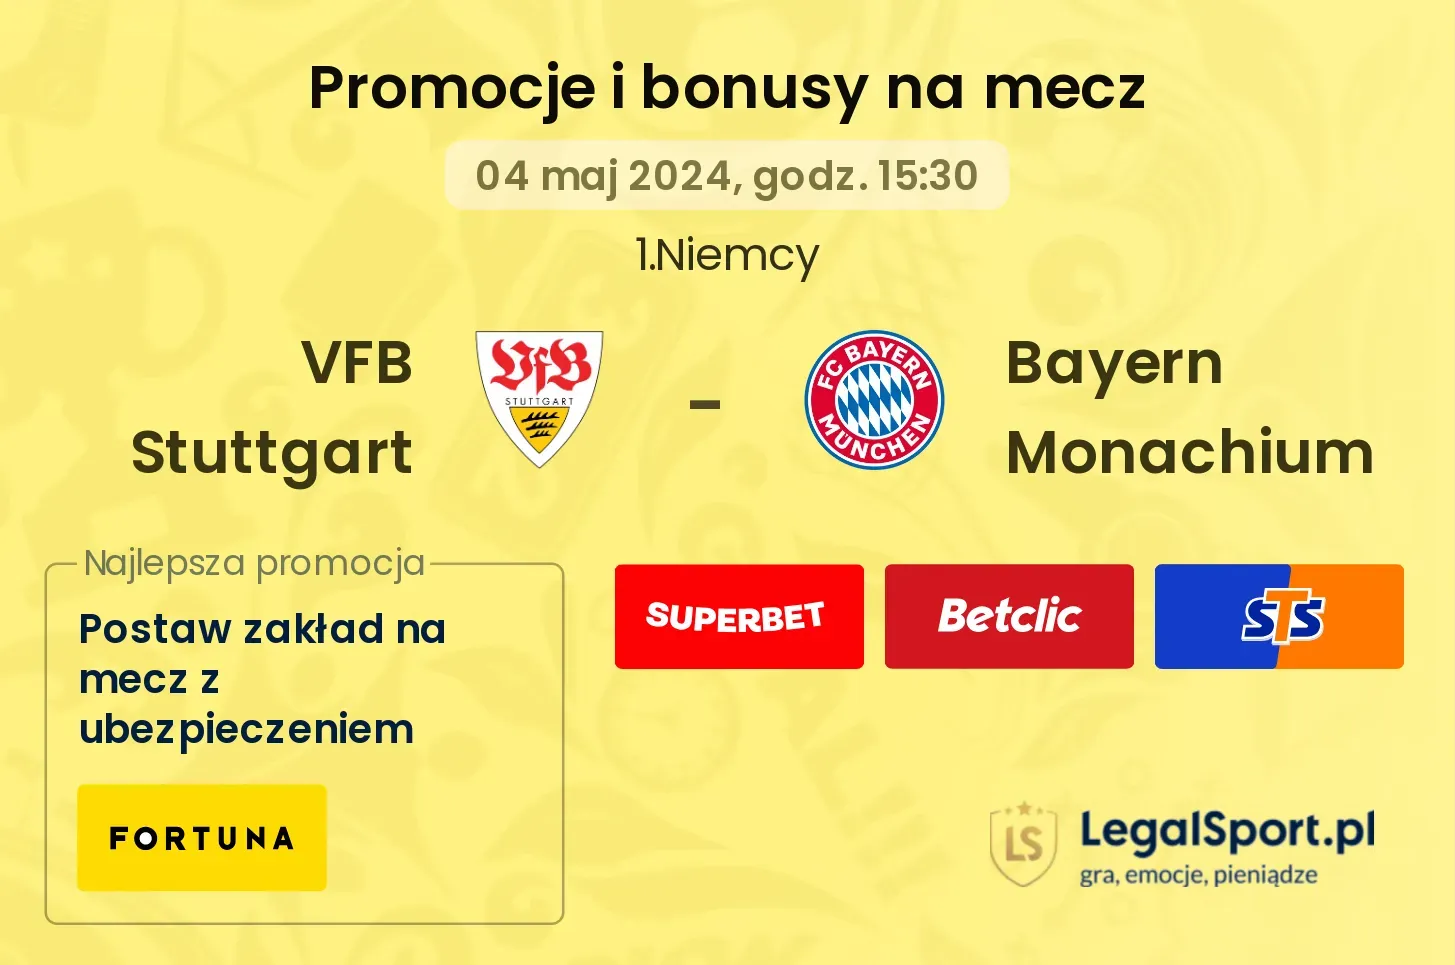 VFB Stuttgart - Bayern Monachium bonusy i promocje (04.05, 15:30)